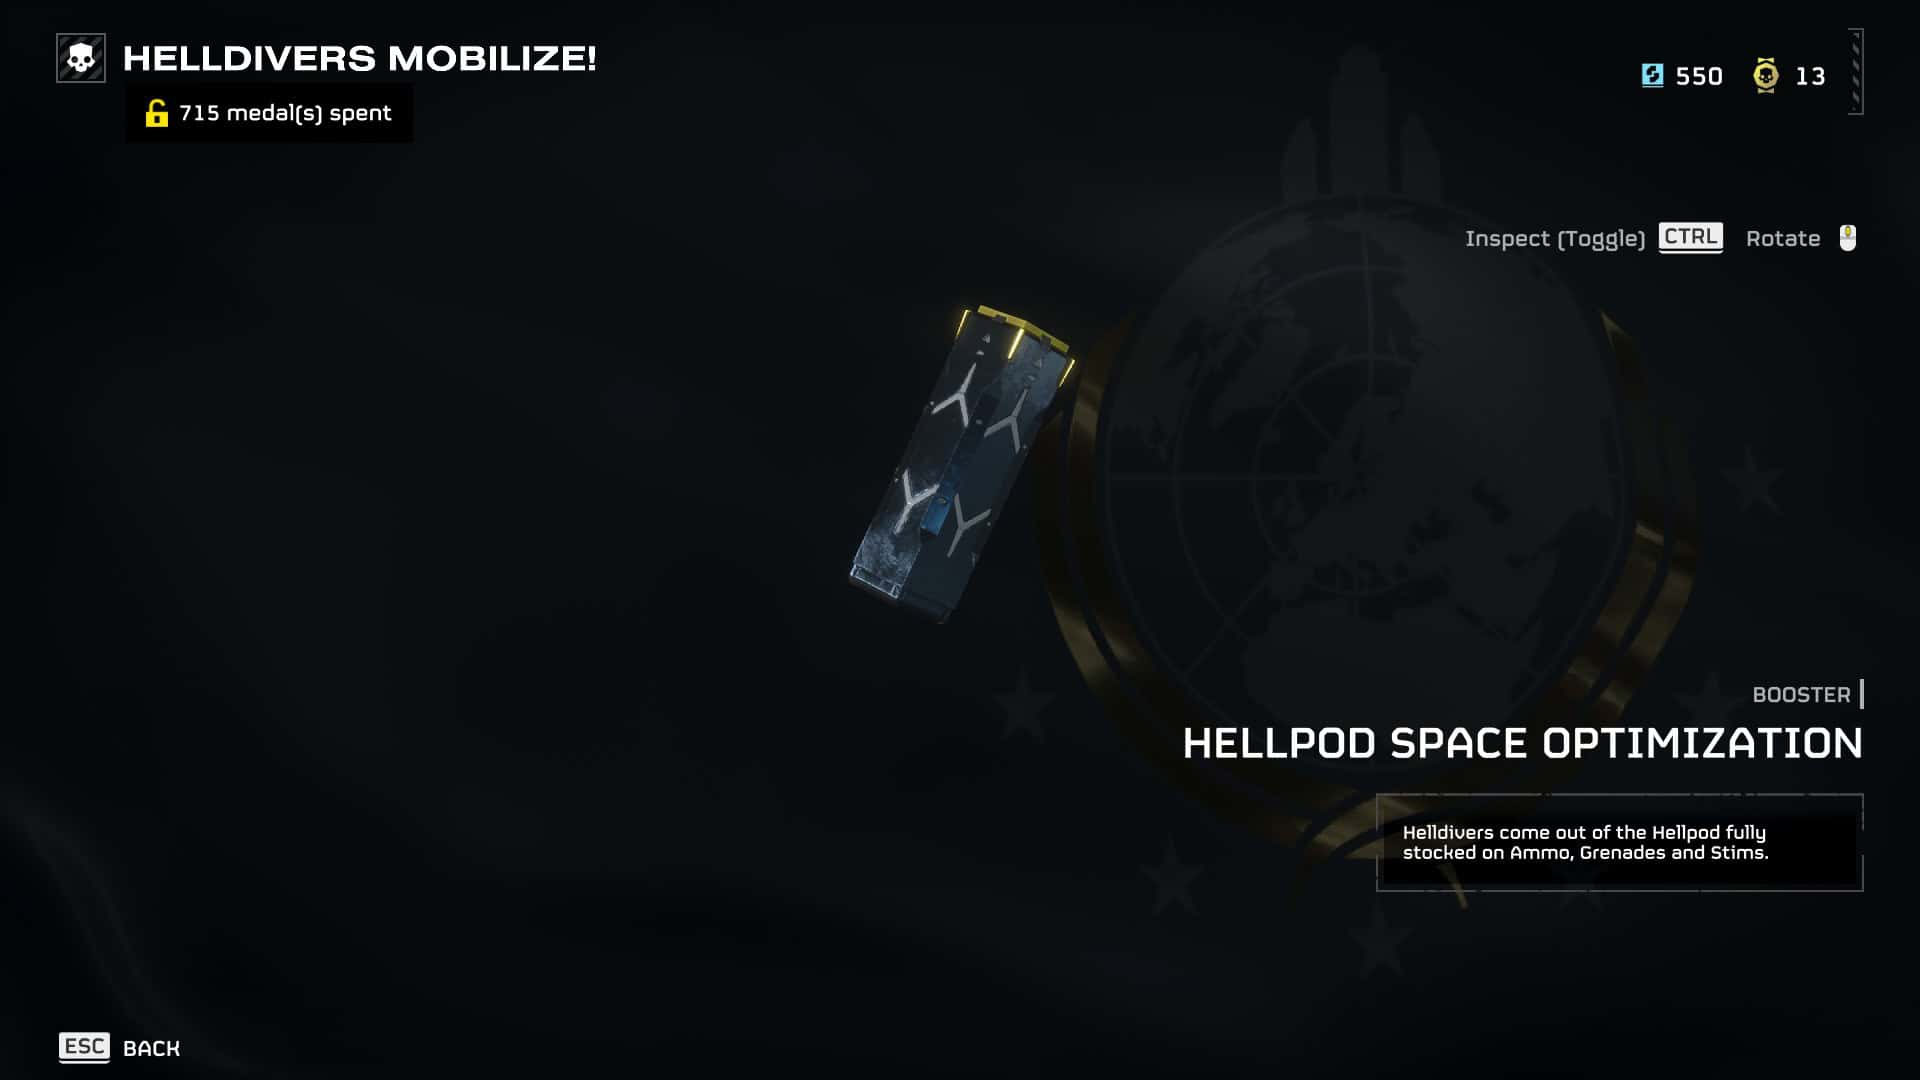 Capture d'écran du "Helldivers 2 se mobilise" jeu vidéo montrant un menu pour "optimisation de l'espace hellpod" avec une image d'une caisse de fournitures sur un fond cosmique.